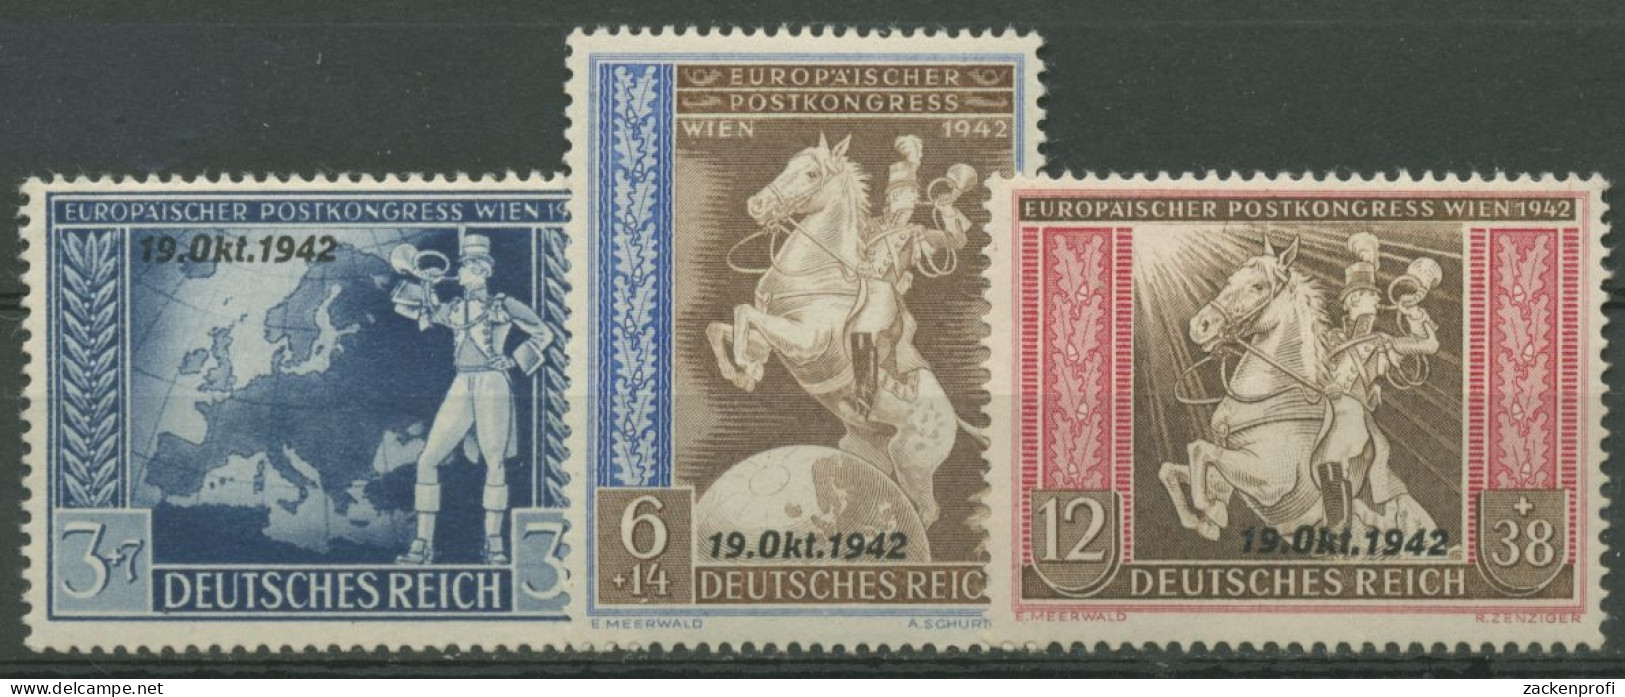 Deutsches Reich 1942 Postkongress Mit Aufdruck 823/25 Mit Falz - Nuovi